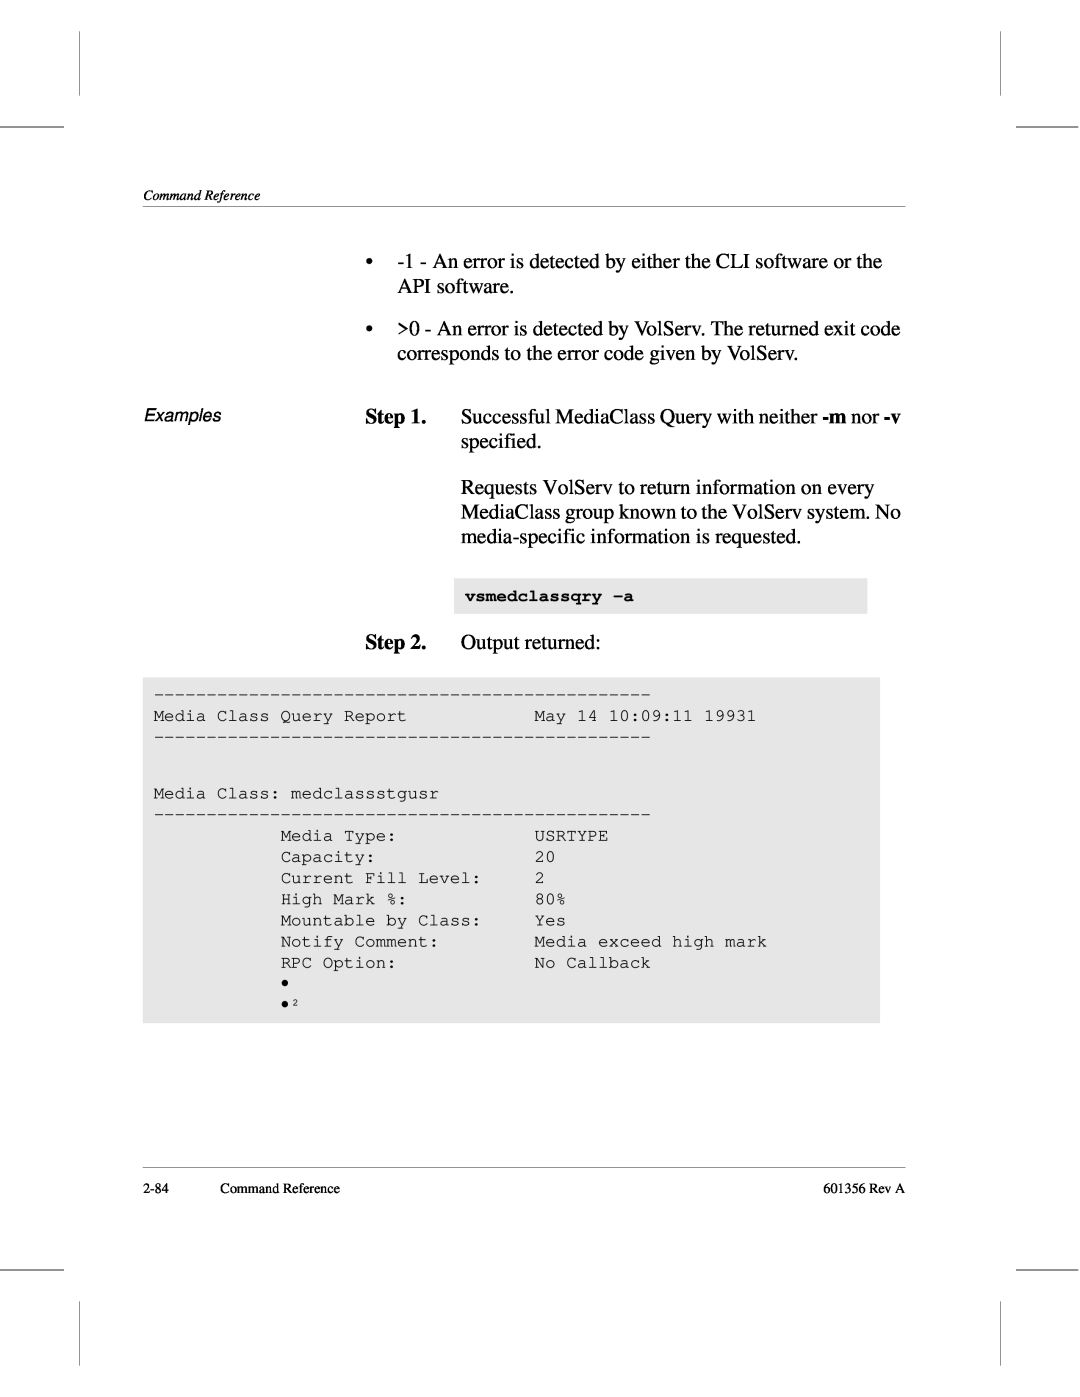 ADIC 601356 manual Step, vsmedclassqry -a 